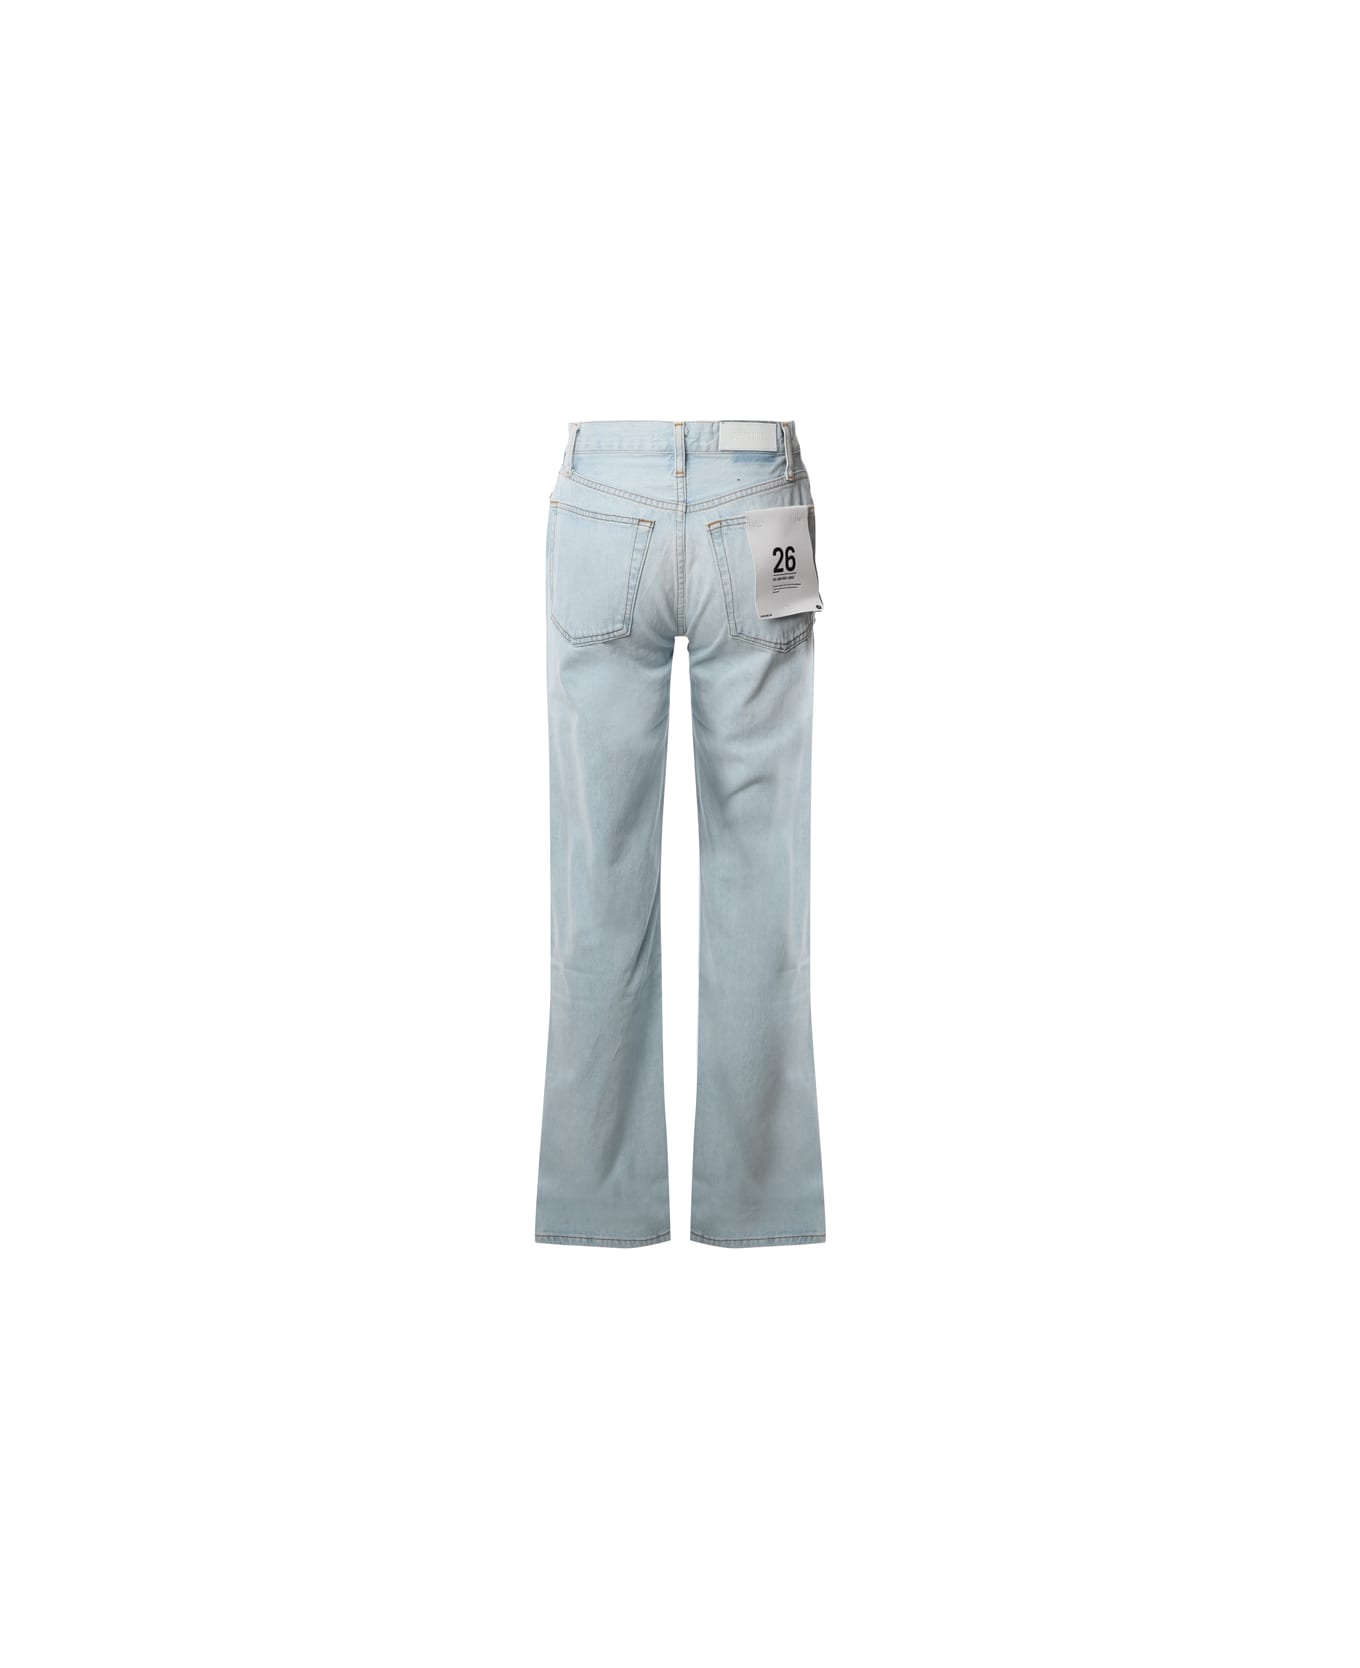 RE/DONE Regular Fit Jeans - Light blue デニム